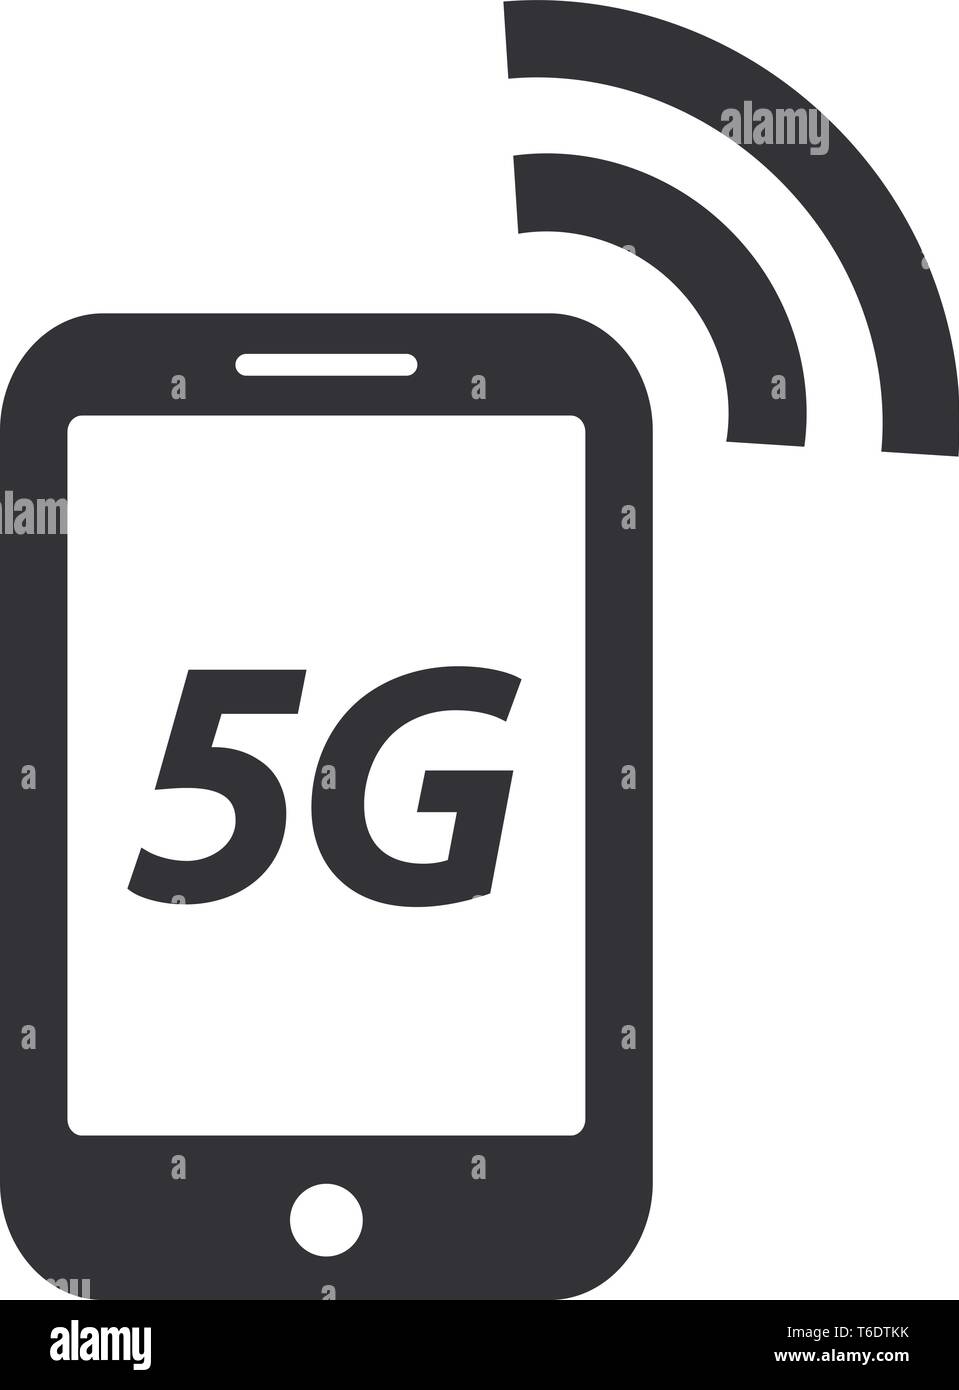 5G telefono cellulare icona simbolo di quinta generazione wireless di velocità di connessione a internet Illustrazione Vettoriale